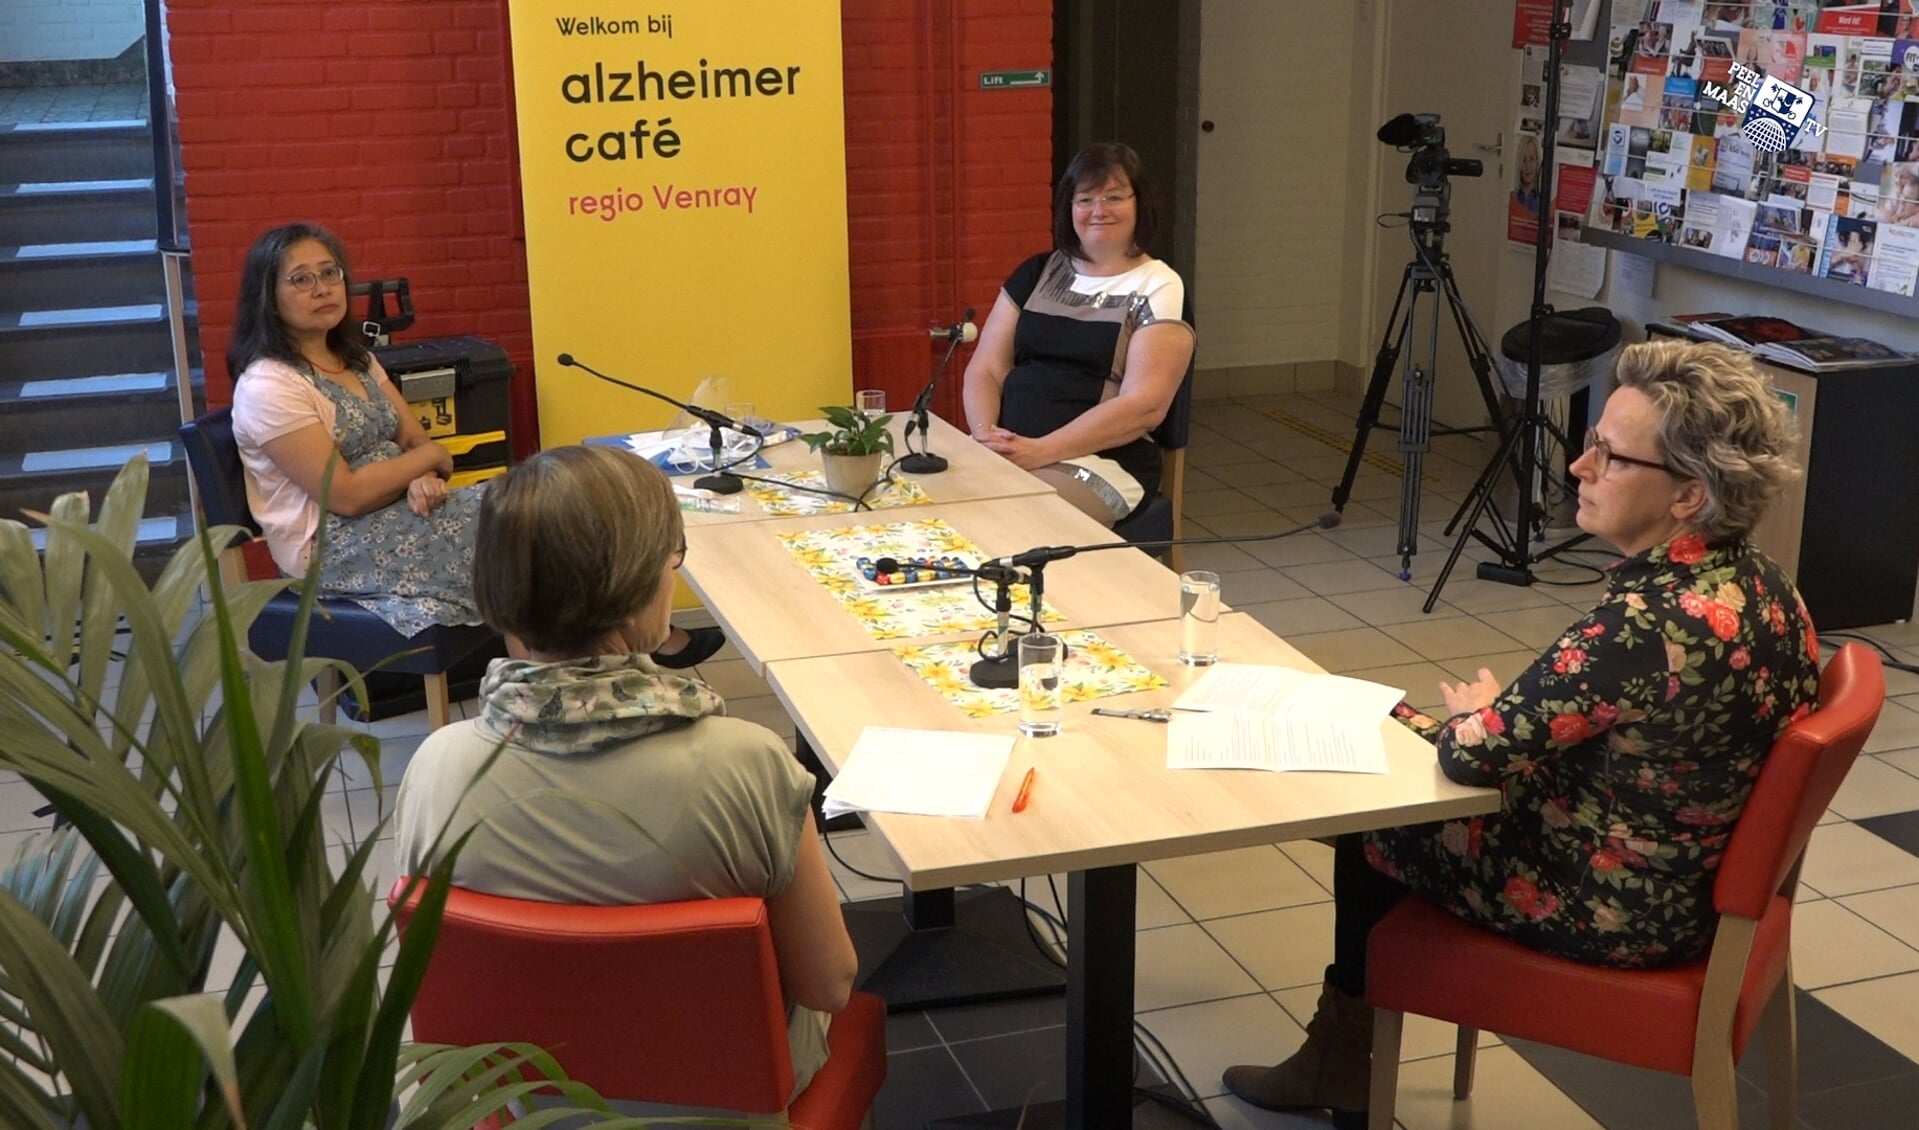 Een beeld van een eerdere tv-opname van het Alzheimer Café. 